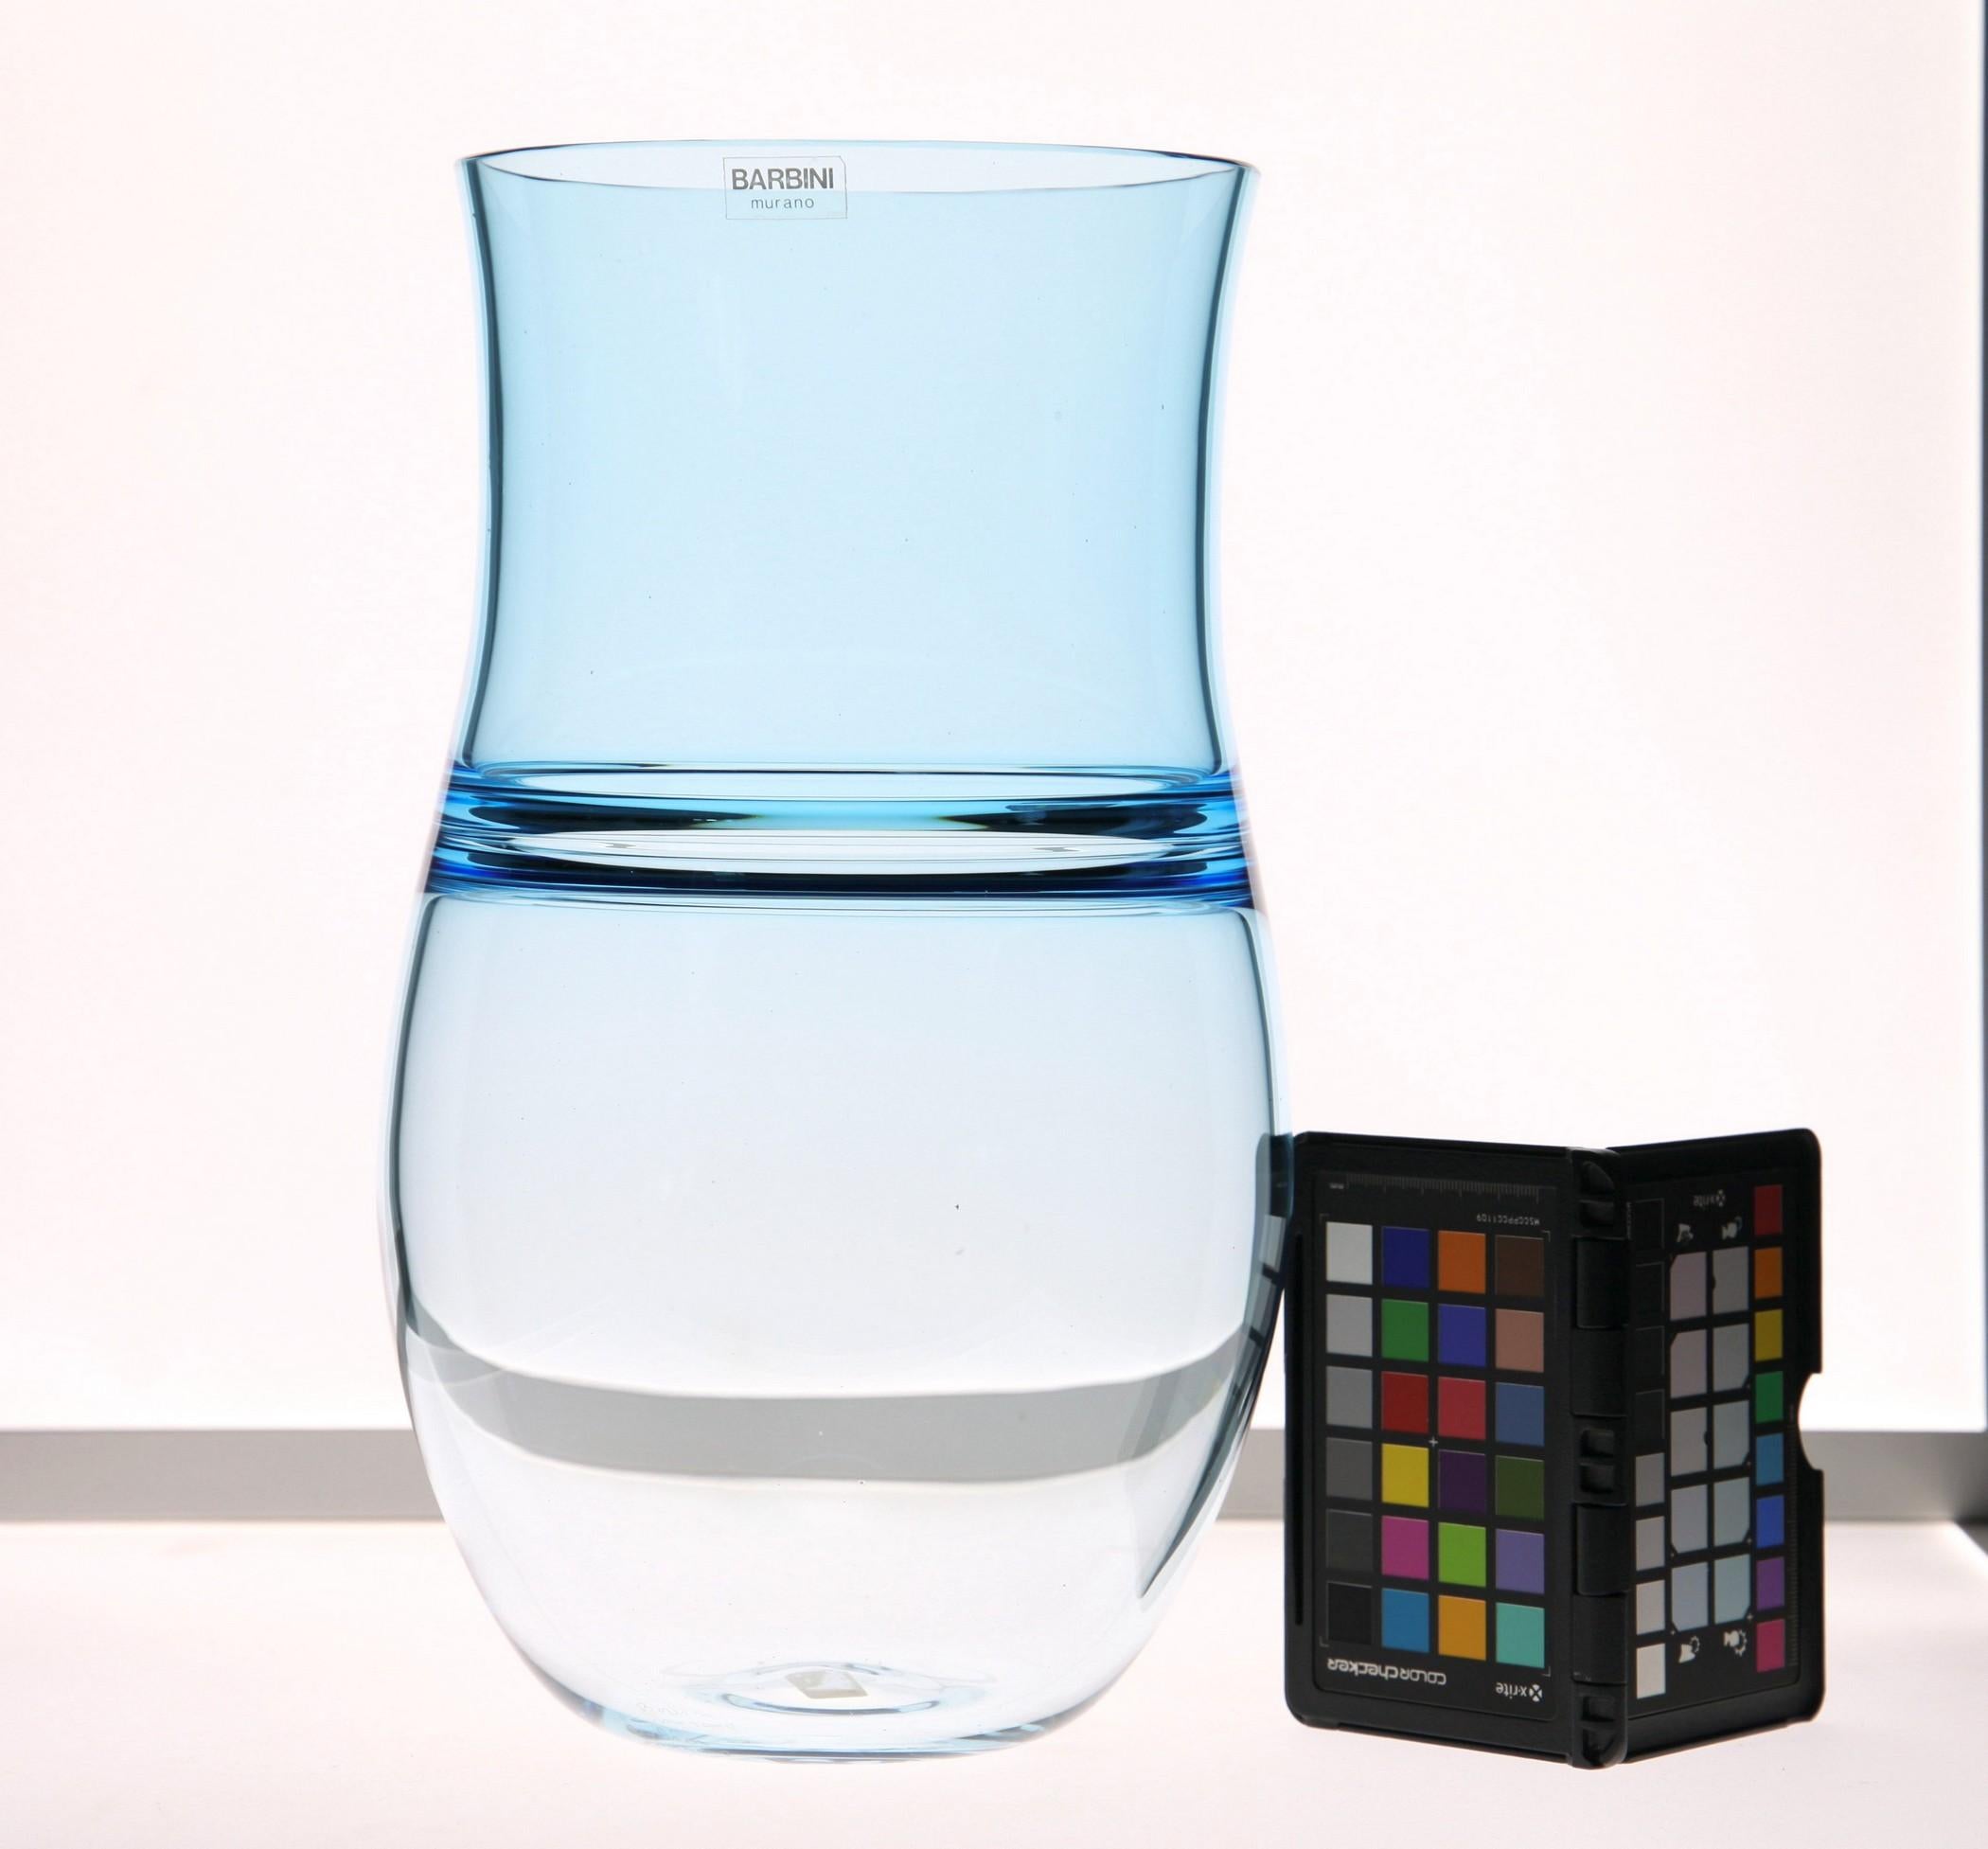 Joli récipient fabriqué à Murano par Alfredo Barbini. Ce vase est fabriqué en deux couleurs, aquamarine et transparent. Les couleurs sont unies par la technique de l'incalmo, l'une des plus difficiles dans le domaine du verre soufflé. En